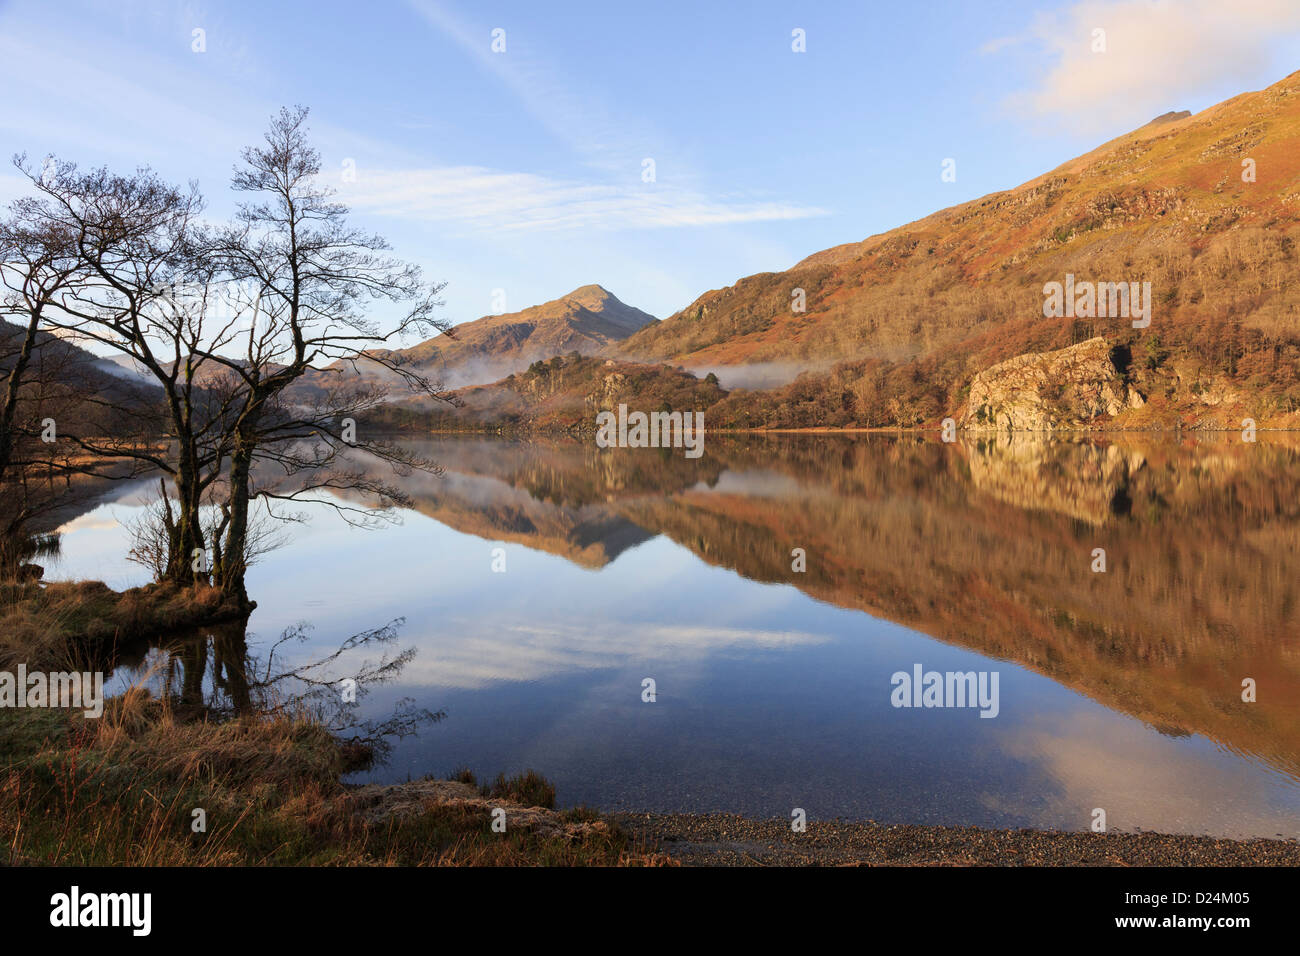 Ruhige Szene mit Blick auf Yr Aran und Wasserspiegelungen im Llyn Gwynant See in den Bergen des Snowdonia National Park. Nordwales Großbritannien Stockfoto